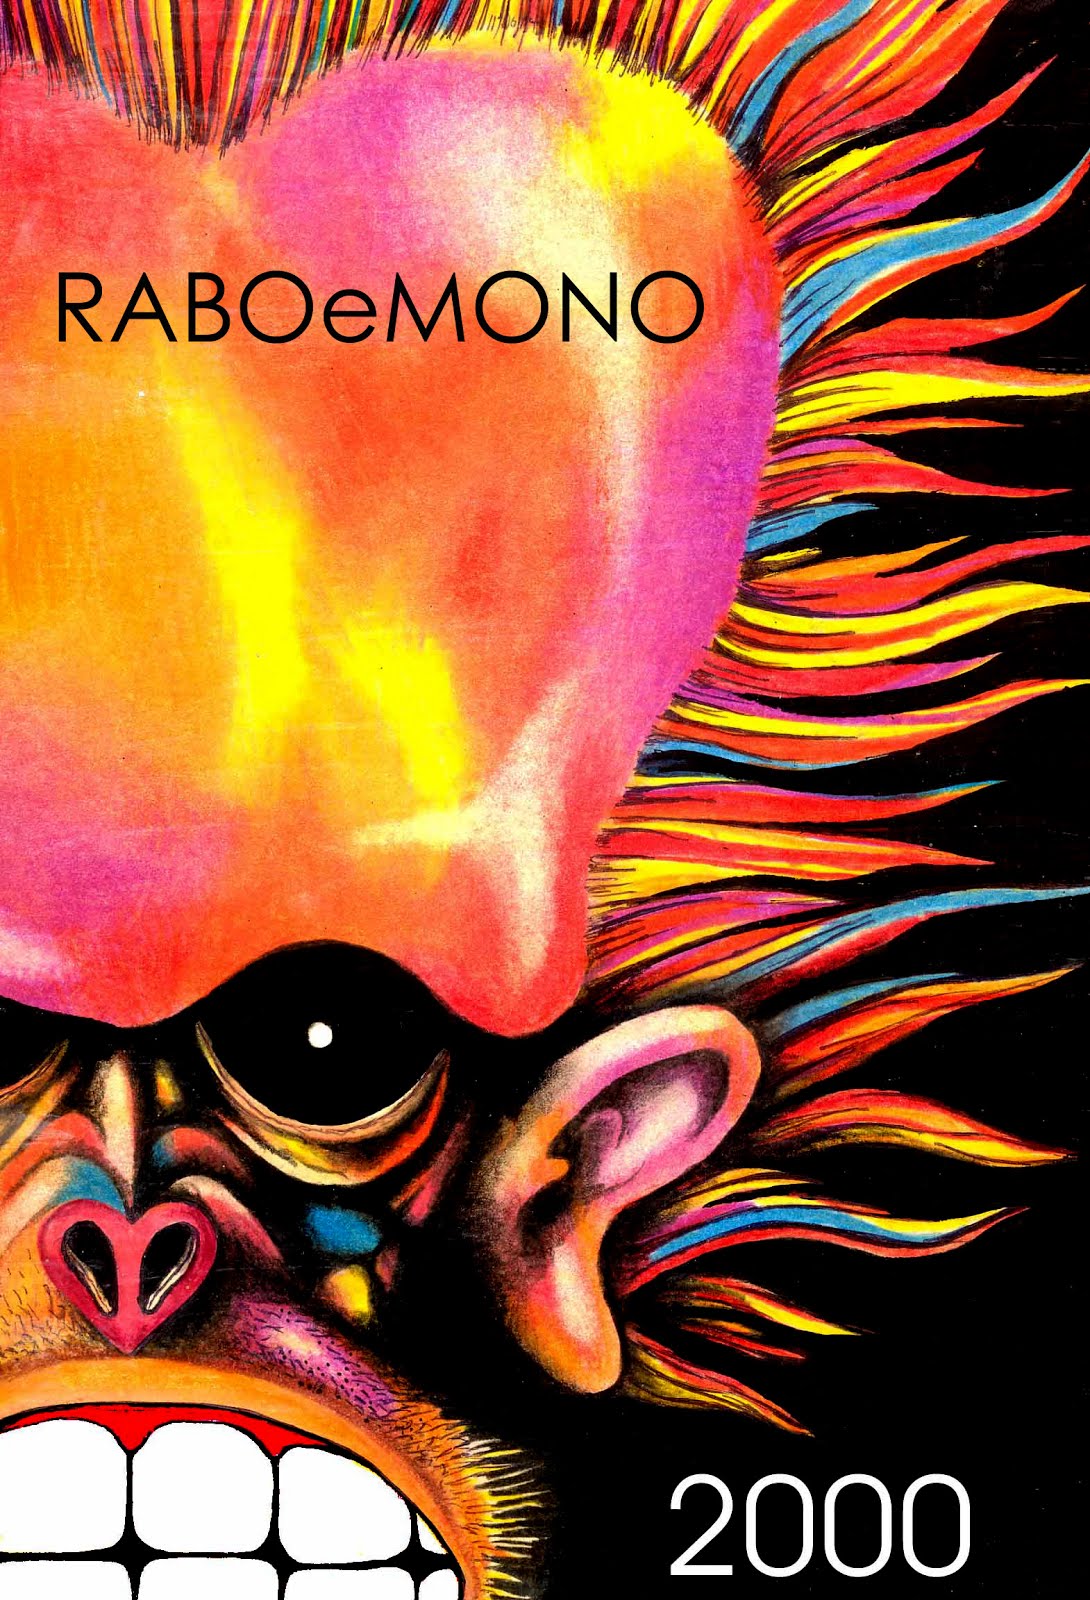 Afiche festival RABO E MONO del año 2000